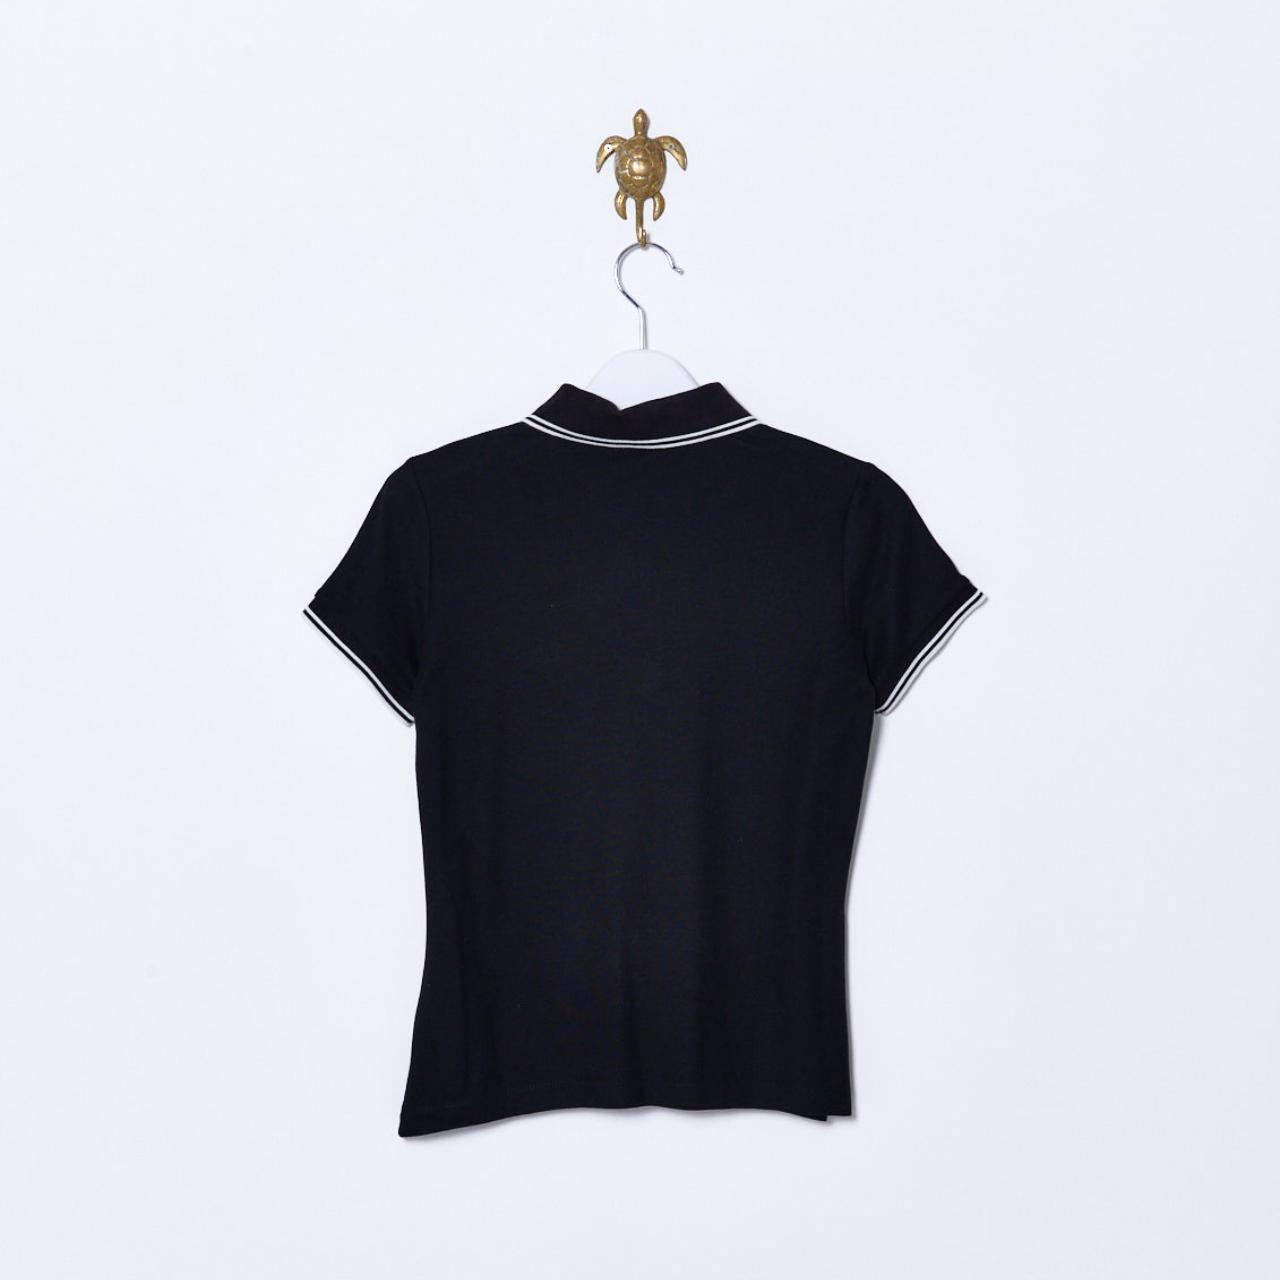 Moncler Women's Black Polo-shirts | Depop